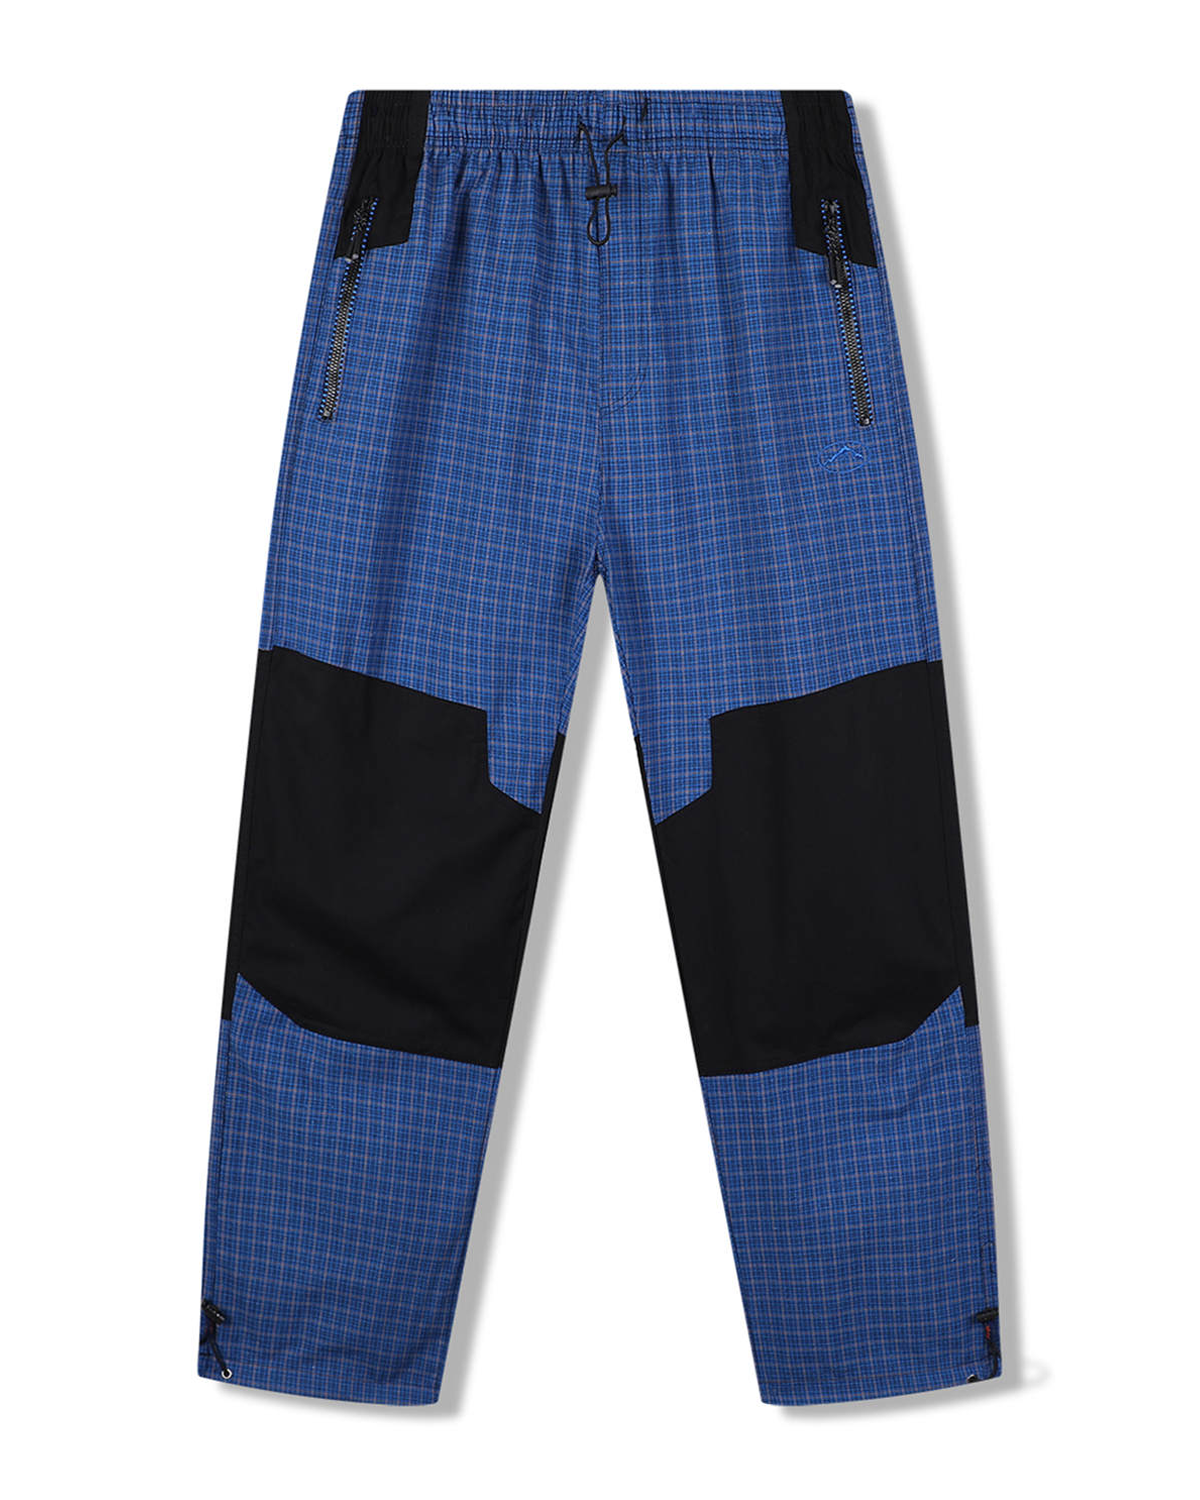 Pánské plátěné kalhoty - KUGO FK7611, modrá Barva: Modrá, Velikost: 3XL